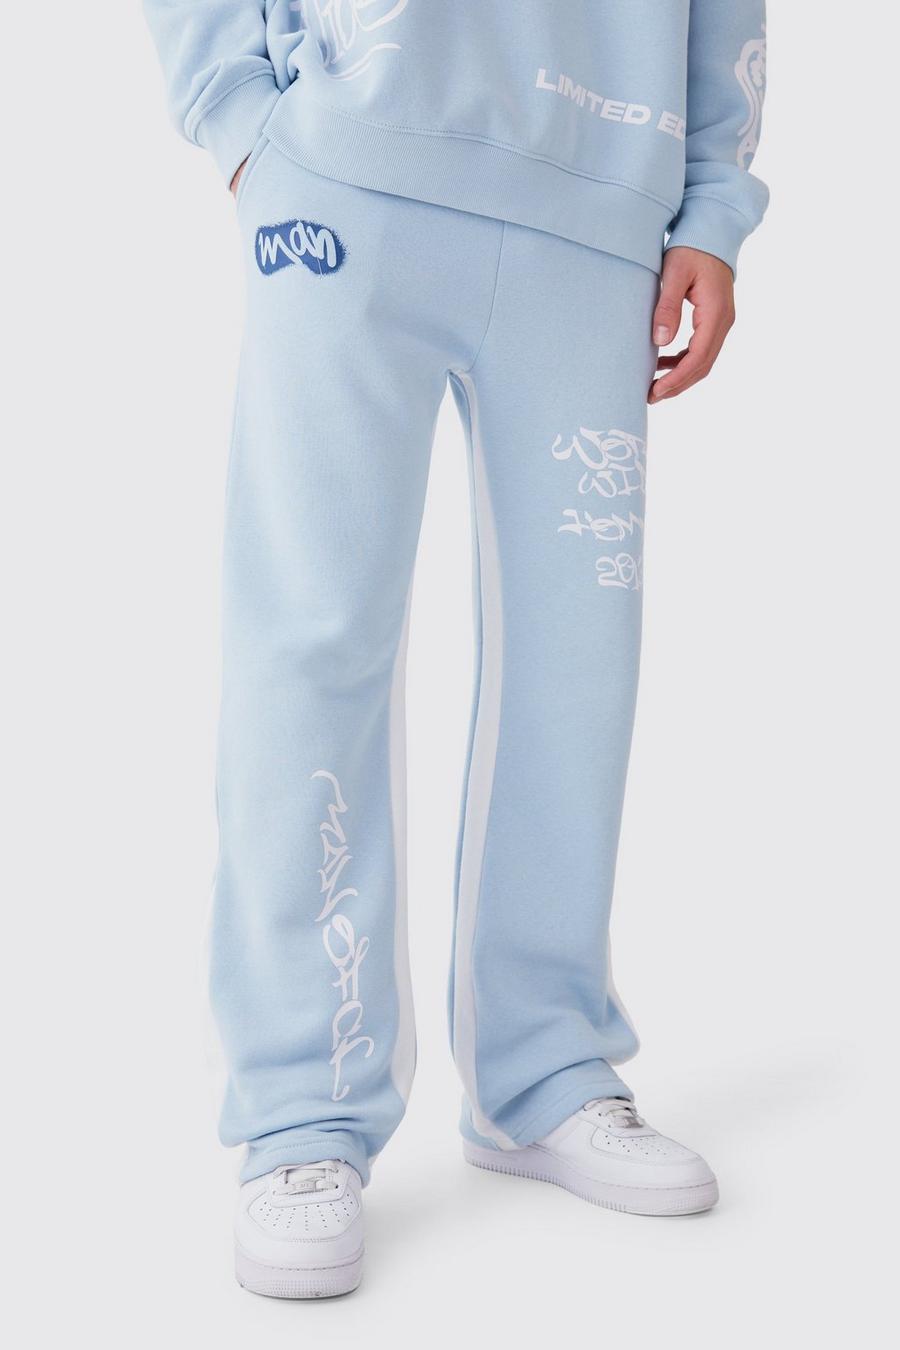 Pantalón deportivo oversize con grafiti y refuerzos en contraste, Light blue